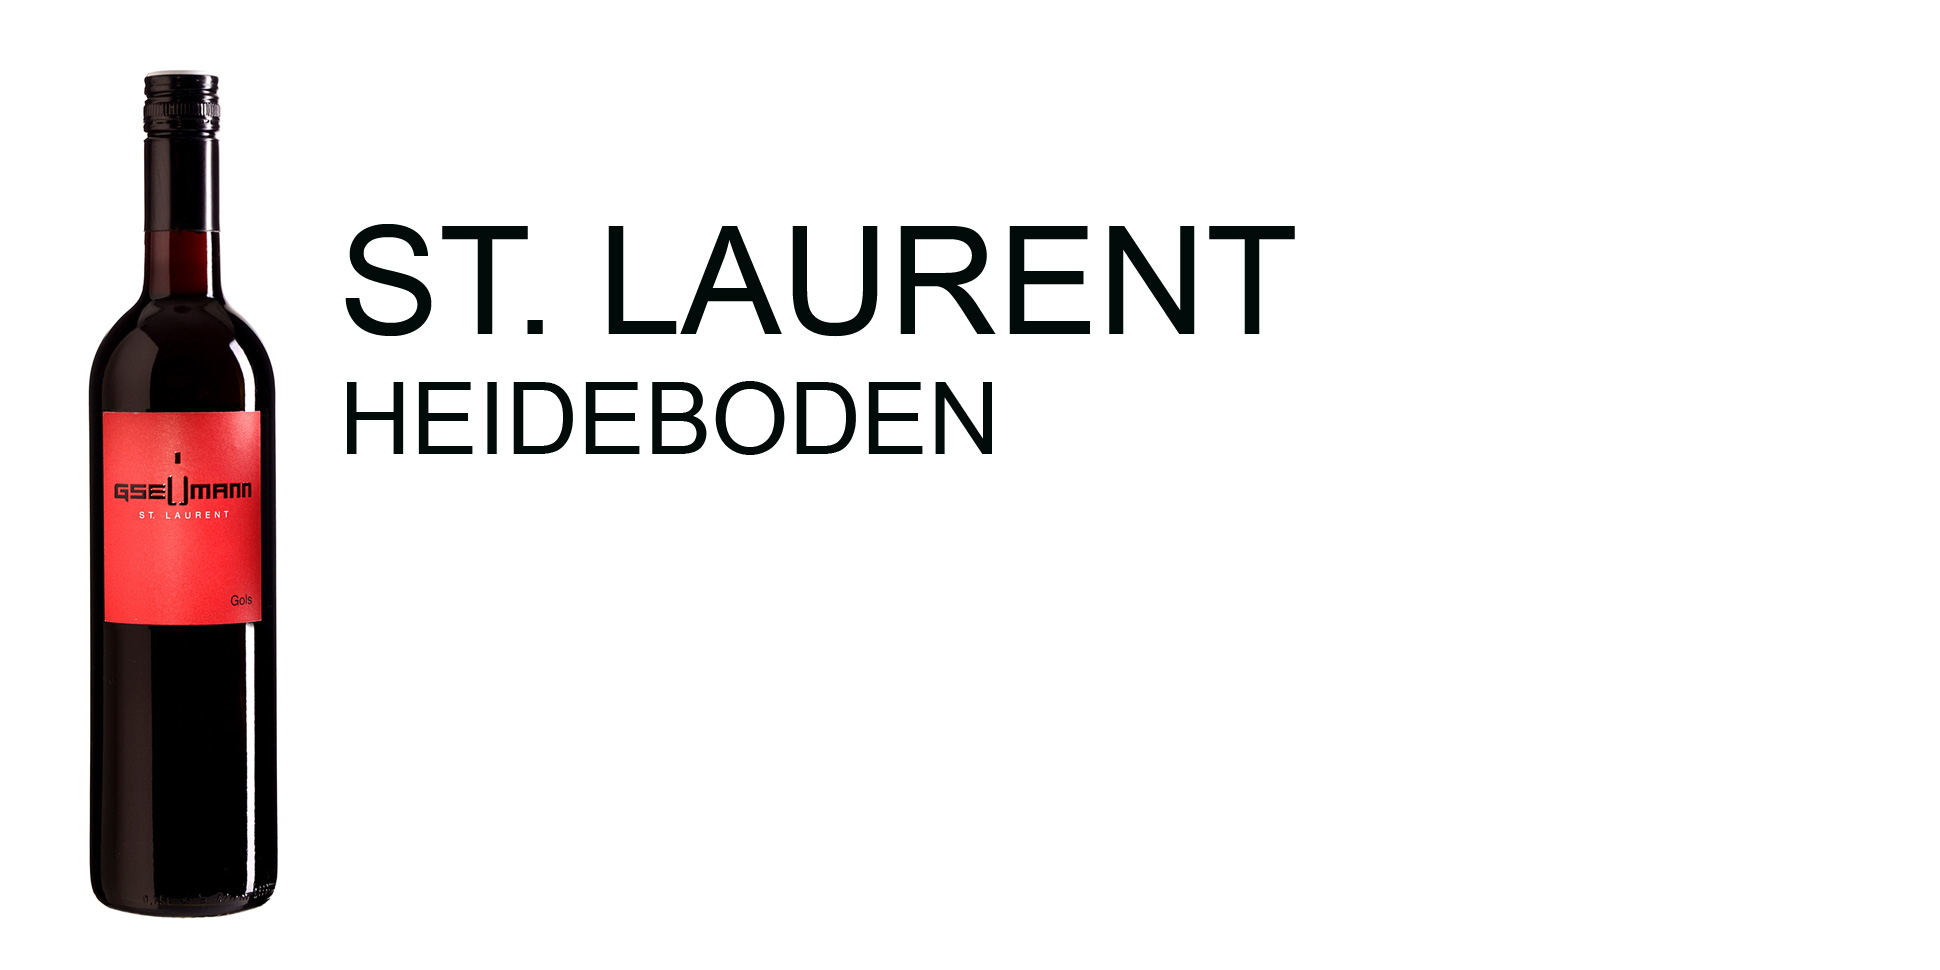 St. Laurent Heideboden